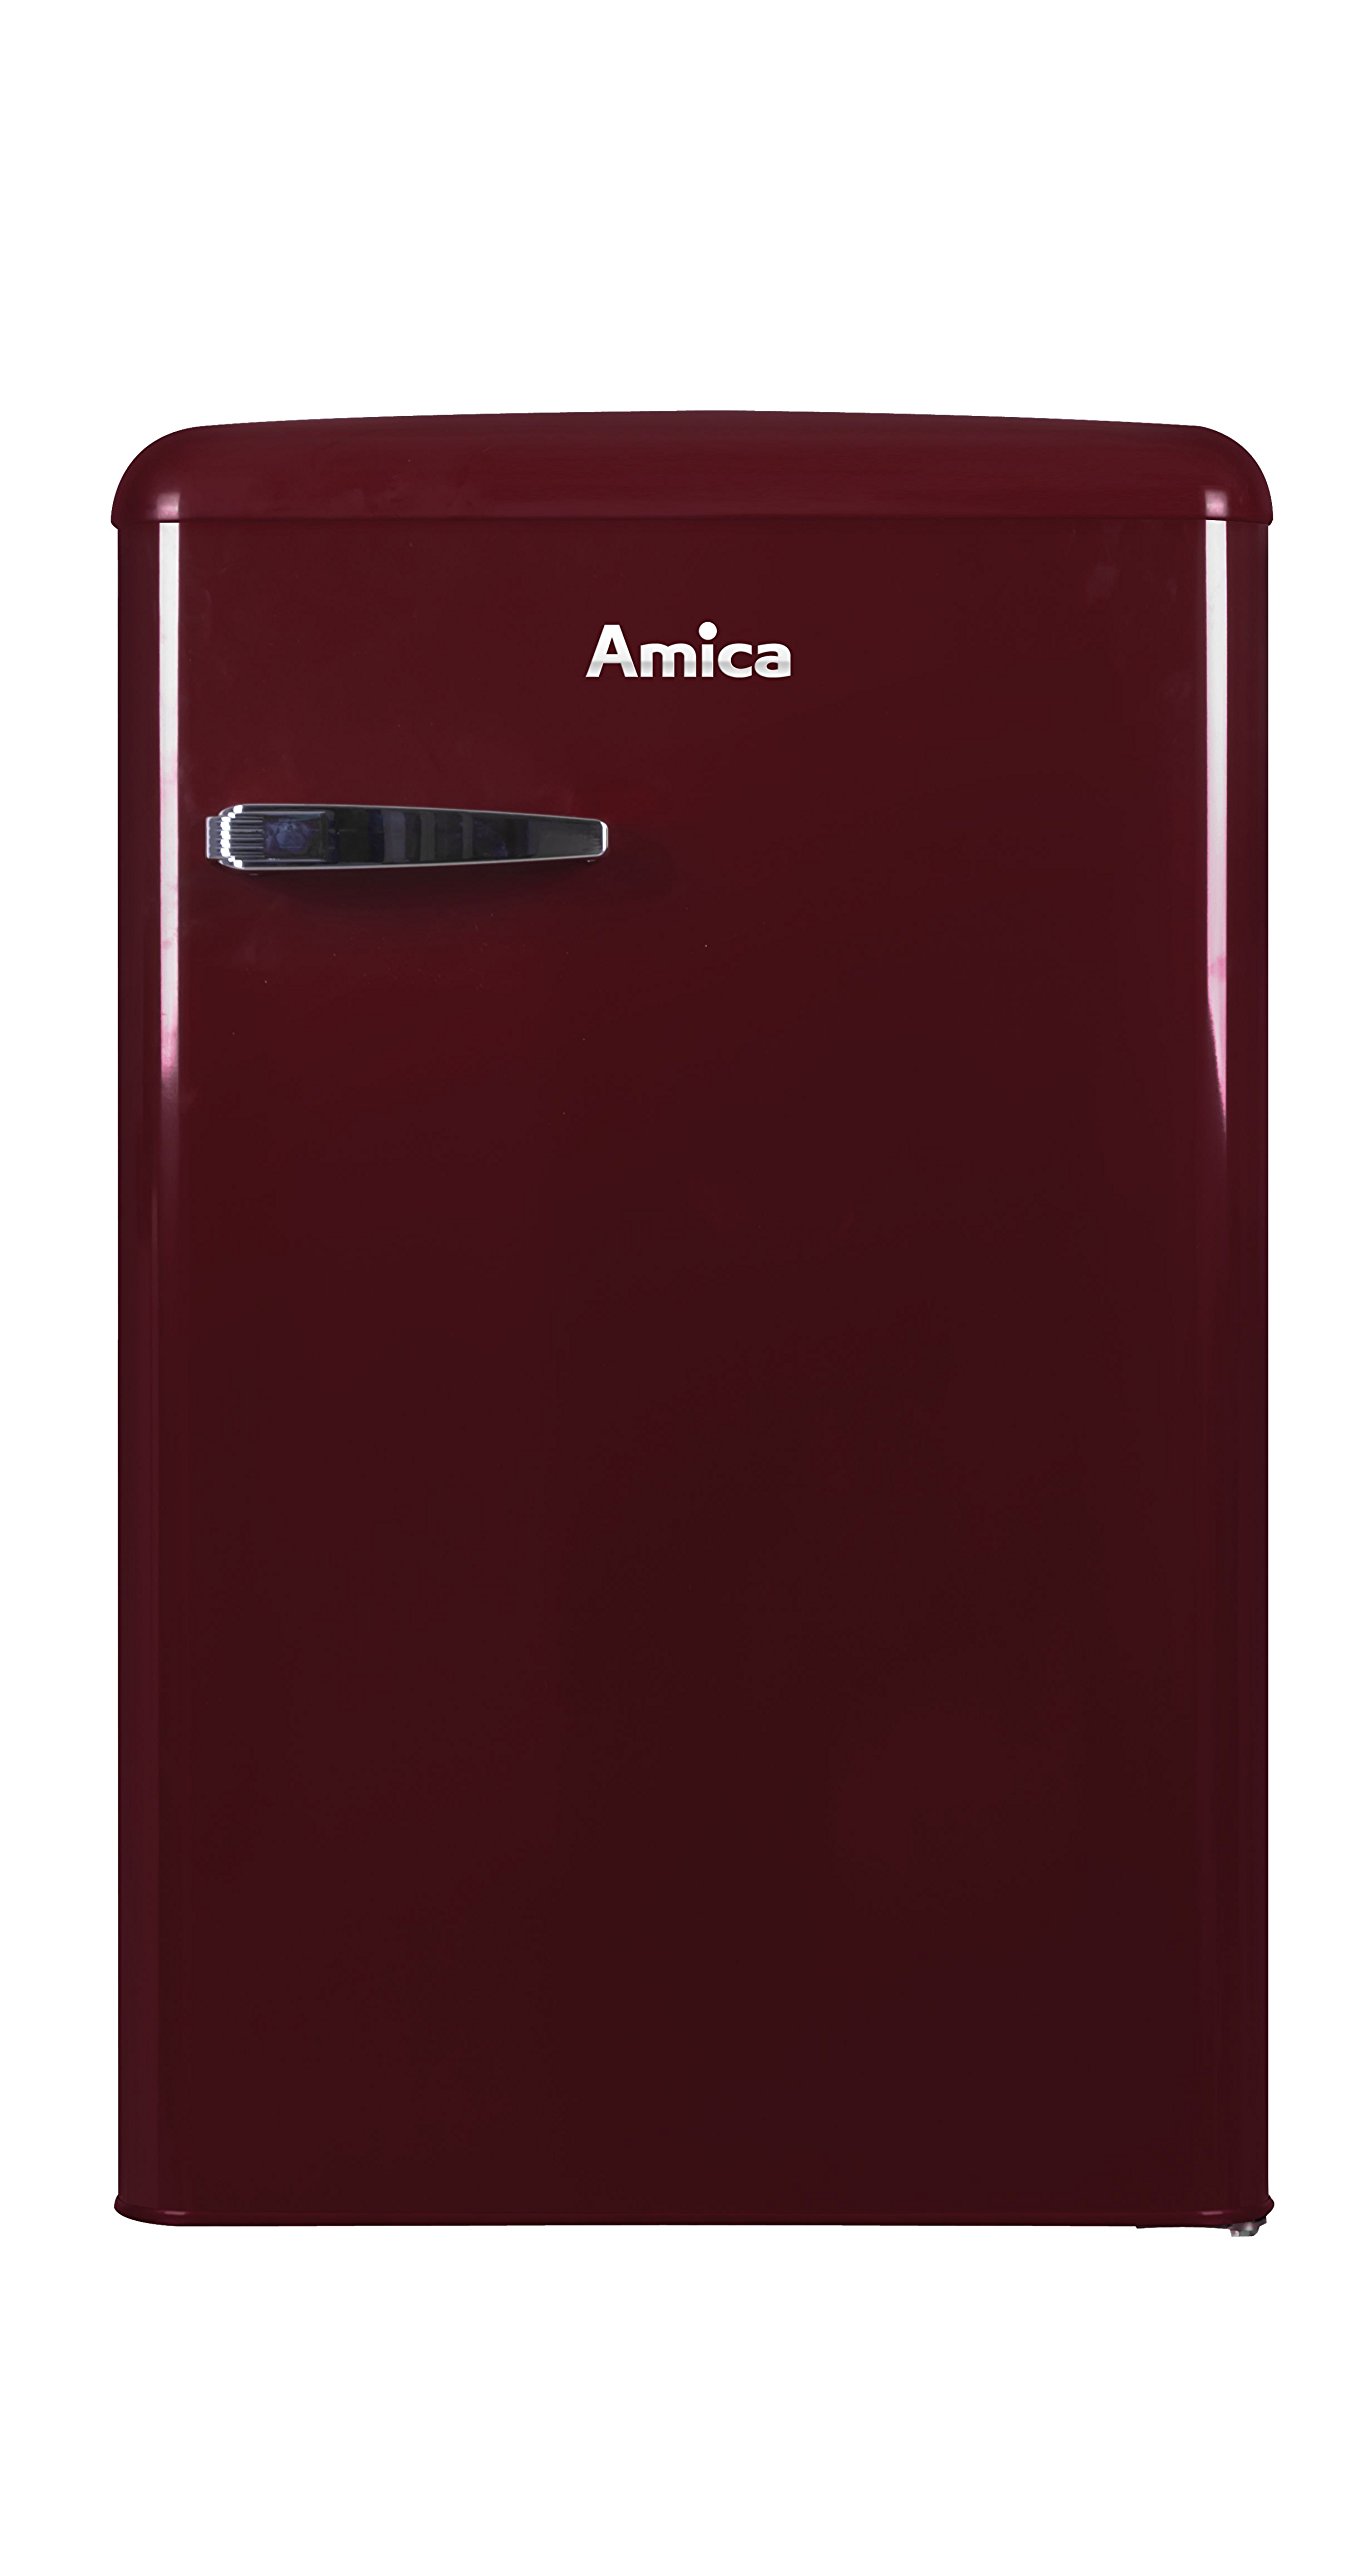 Amica KS 15611 R Retro Kühlschrank mit Gefrierfach / Wine Red (Weinrot) / 88cm (H) x 55cm (B) x 62cm (T) / Retro-Design